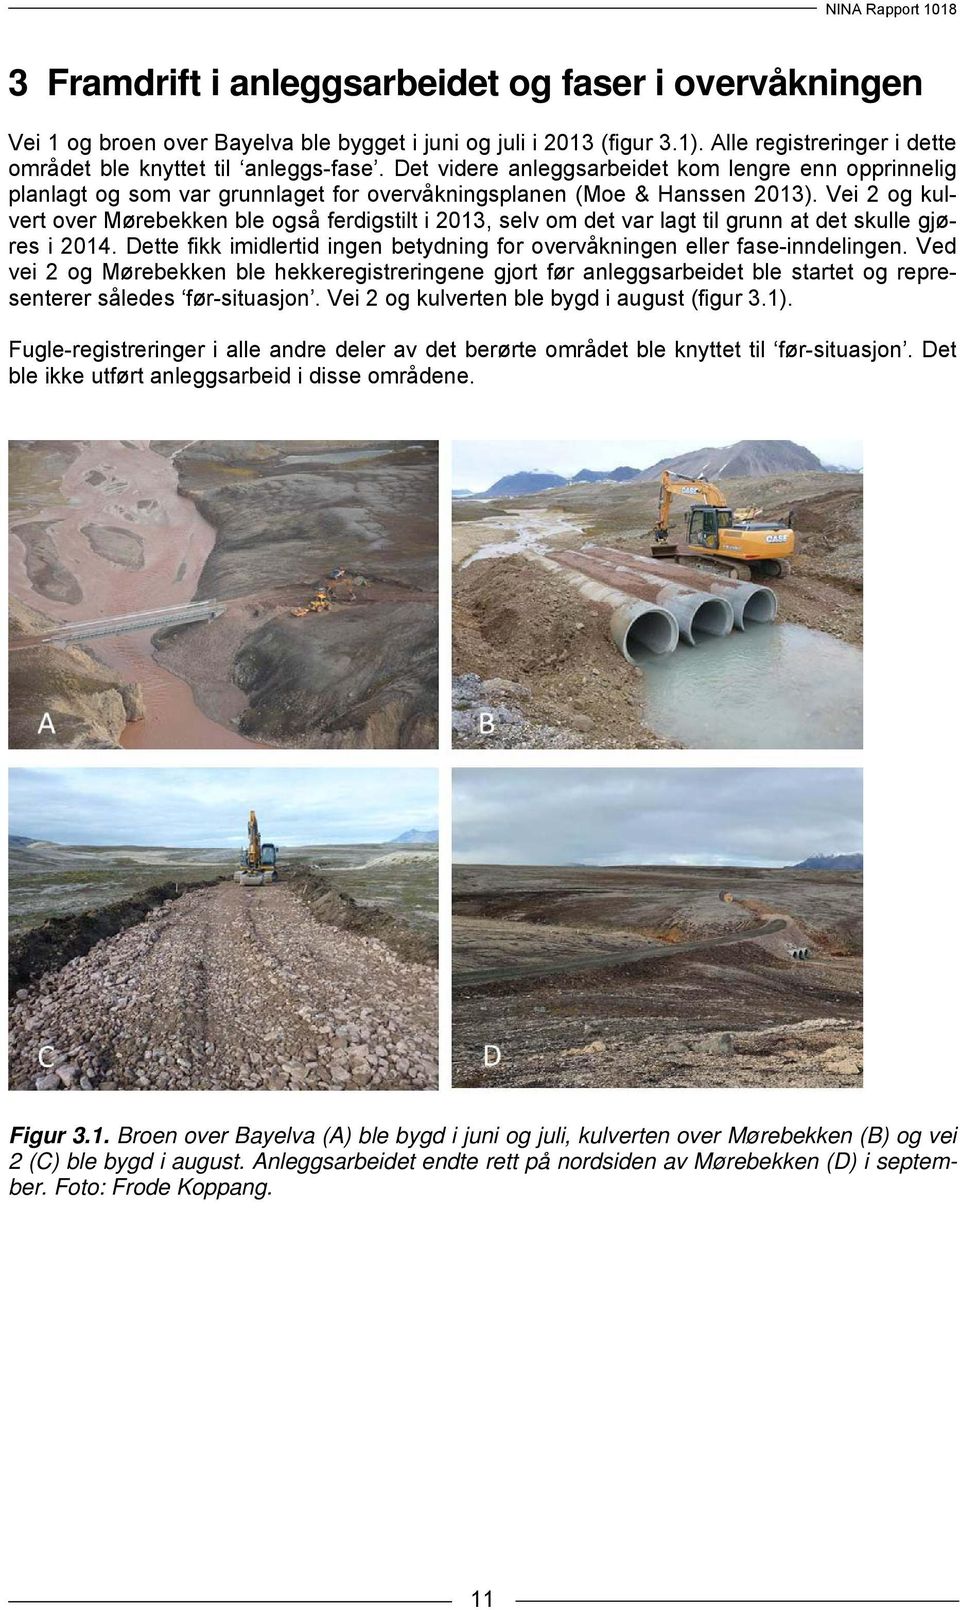 Vei 2 og kulvert over Mørebekken ble også ferdigstilt i 2013, selv om det var lagt til grunn at det skulle gjøres i 2014.